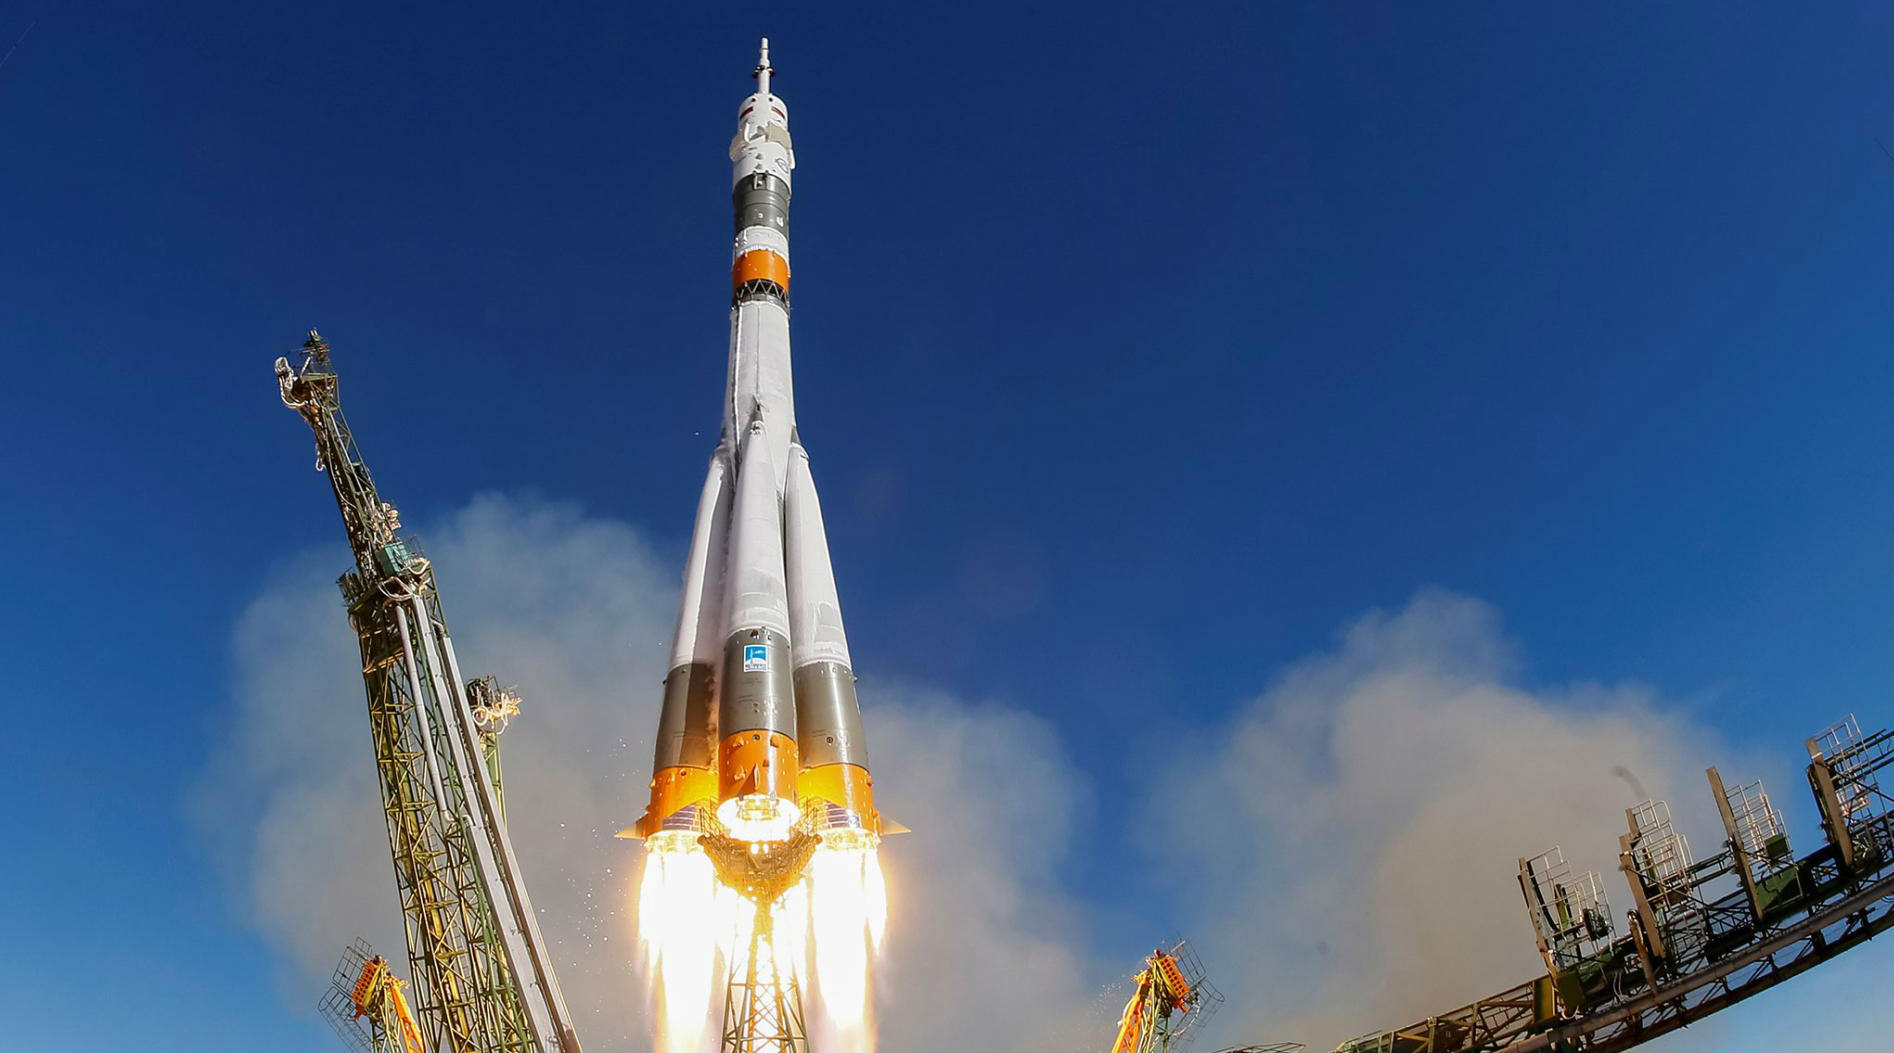 Una colisión entre partes del cohete causó la avería de la Soyuz MS10